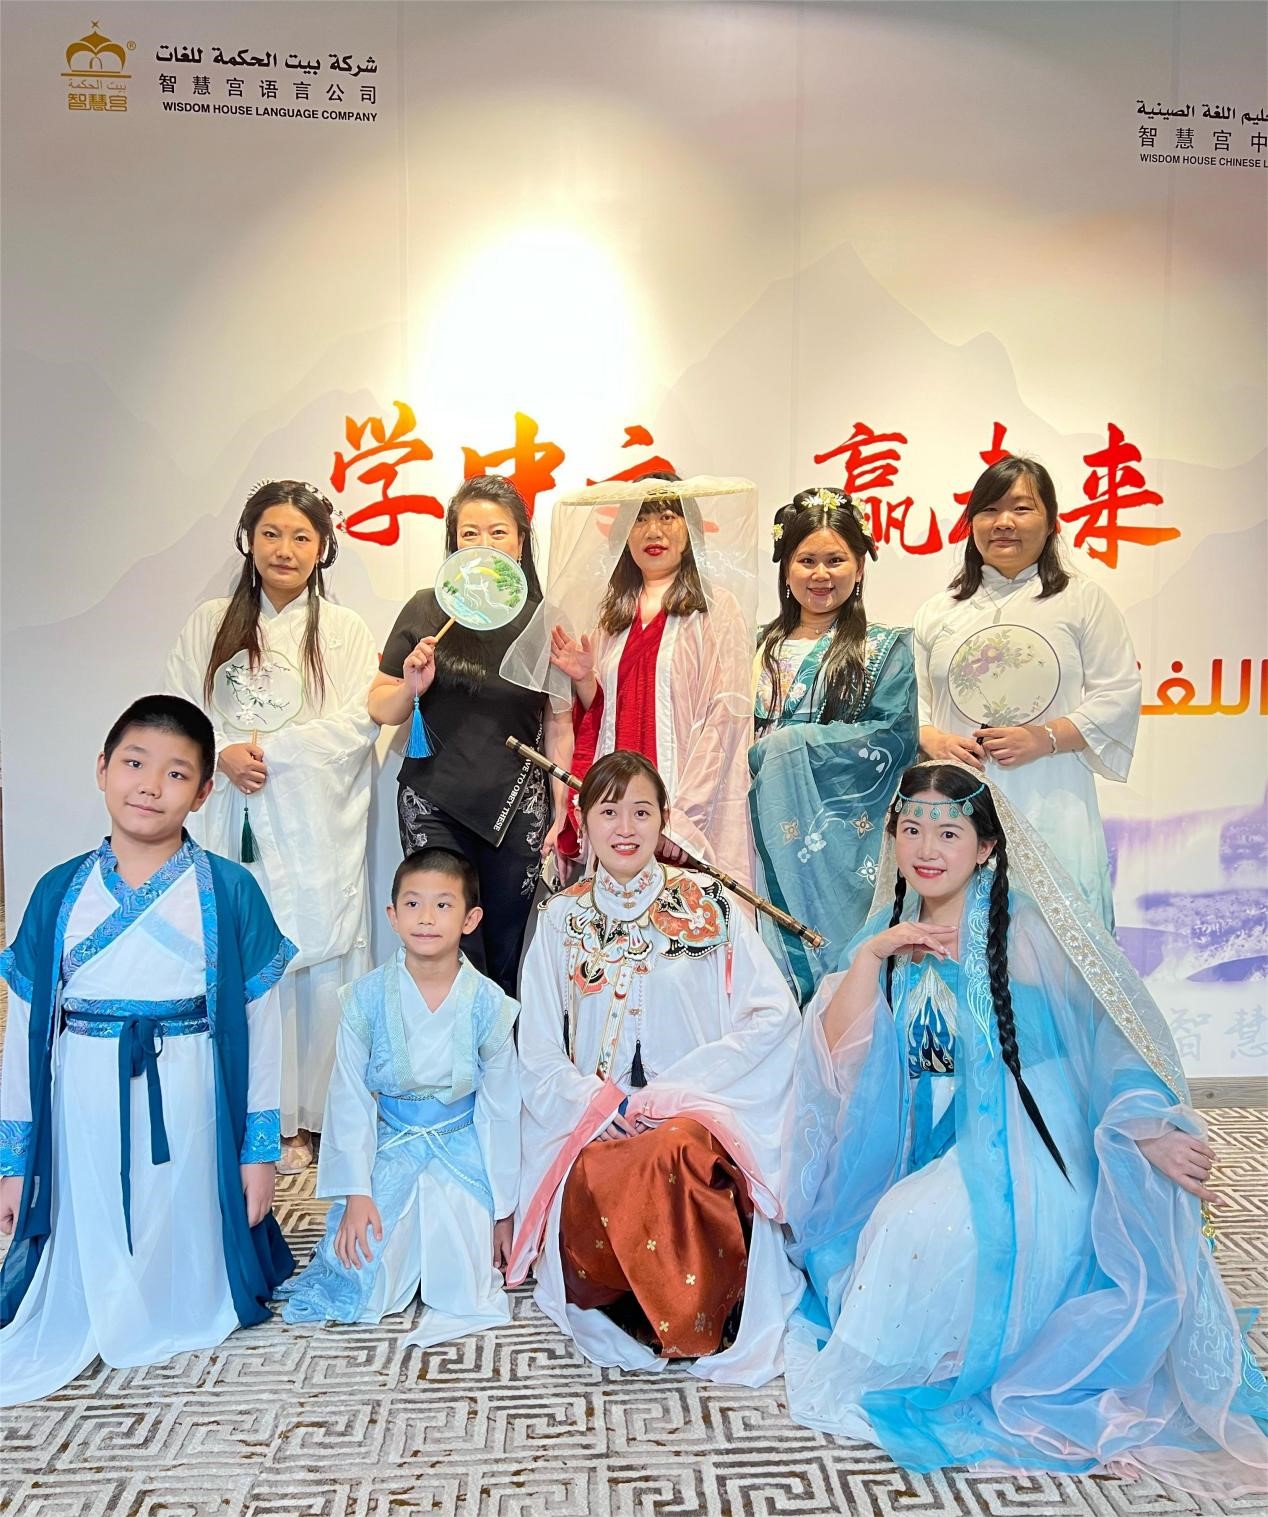 沙特智慧宫举办首场中国文化活动